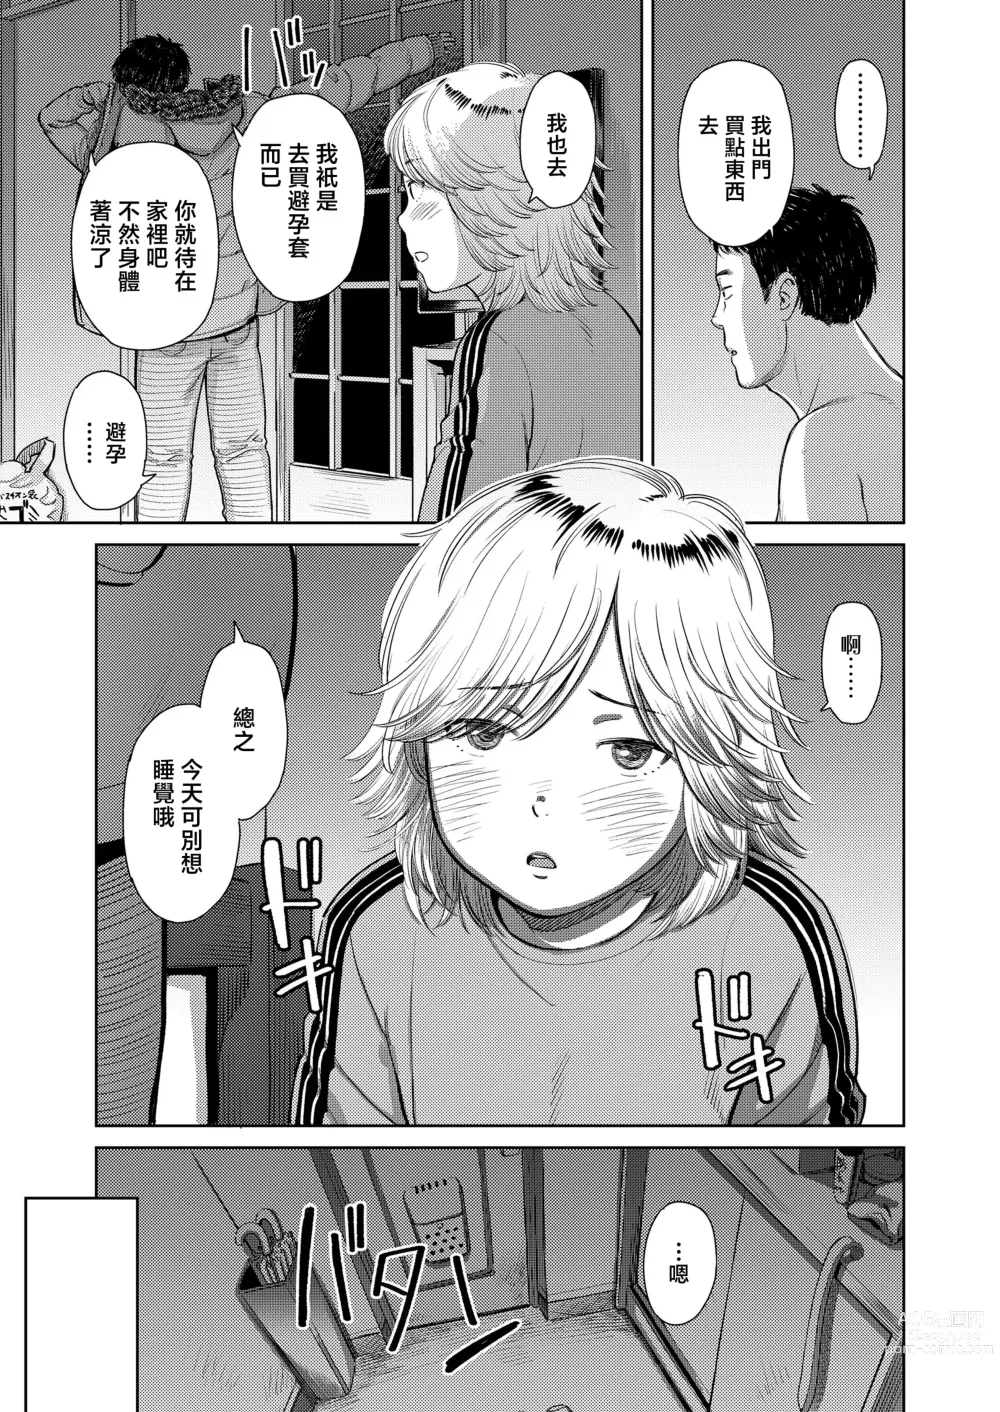 Page 23 of manga Yoru ni Houkou